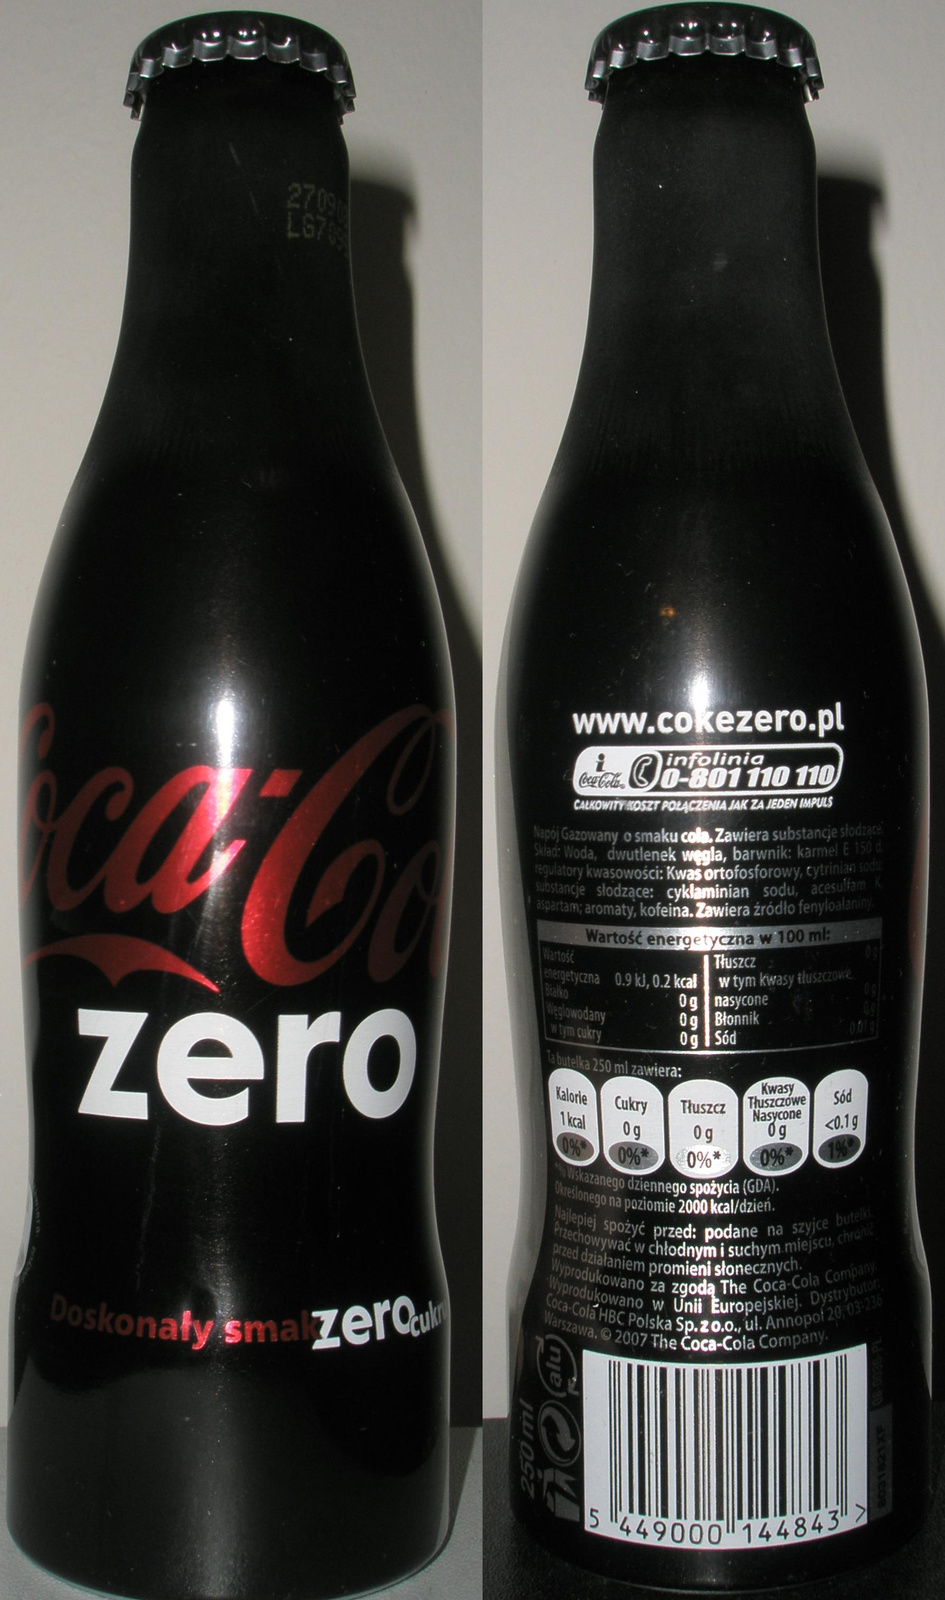 Coke Zero Poland-2008